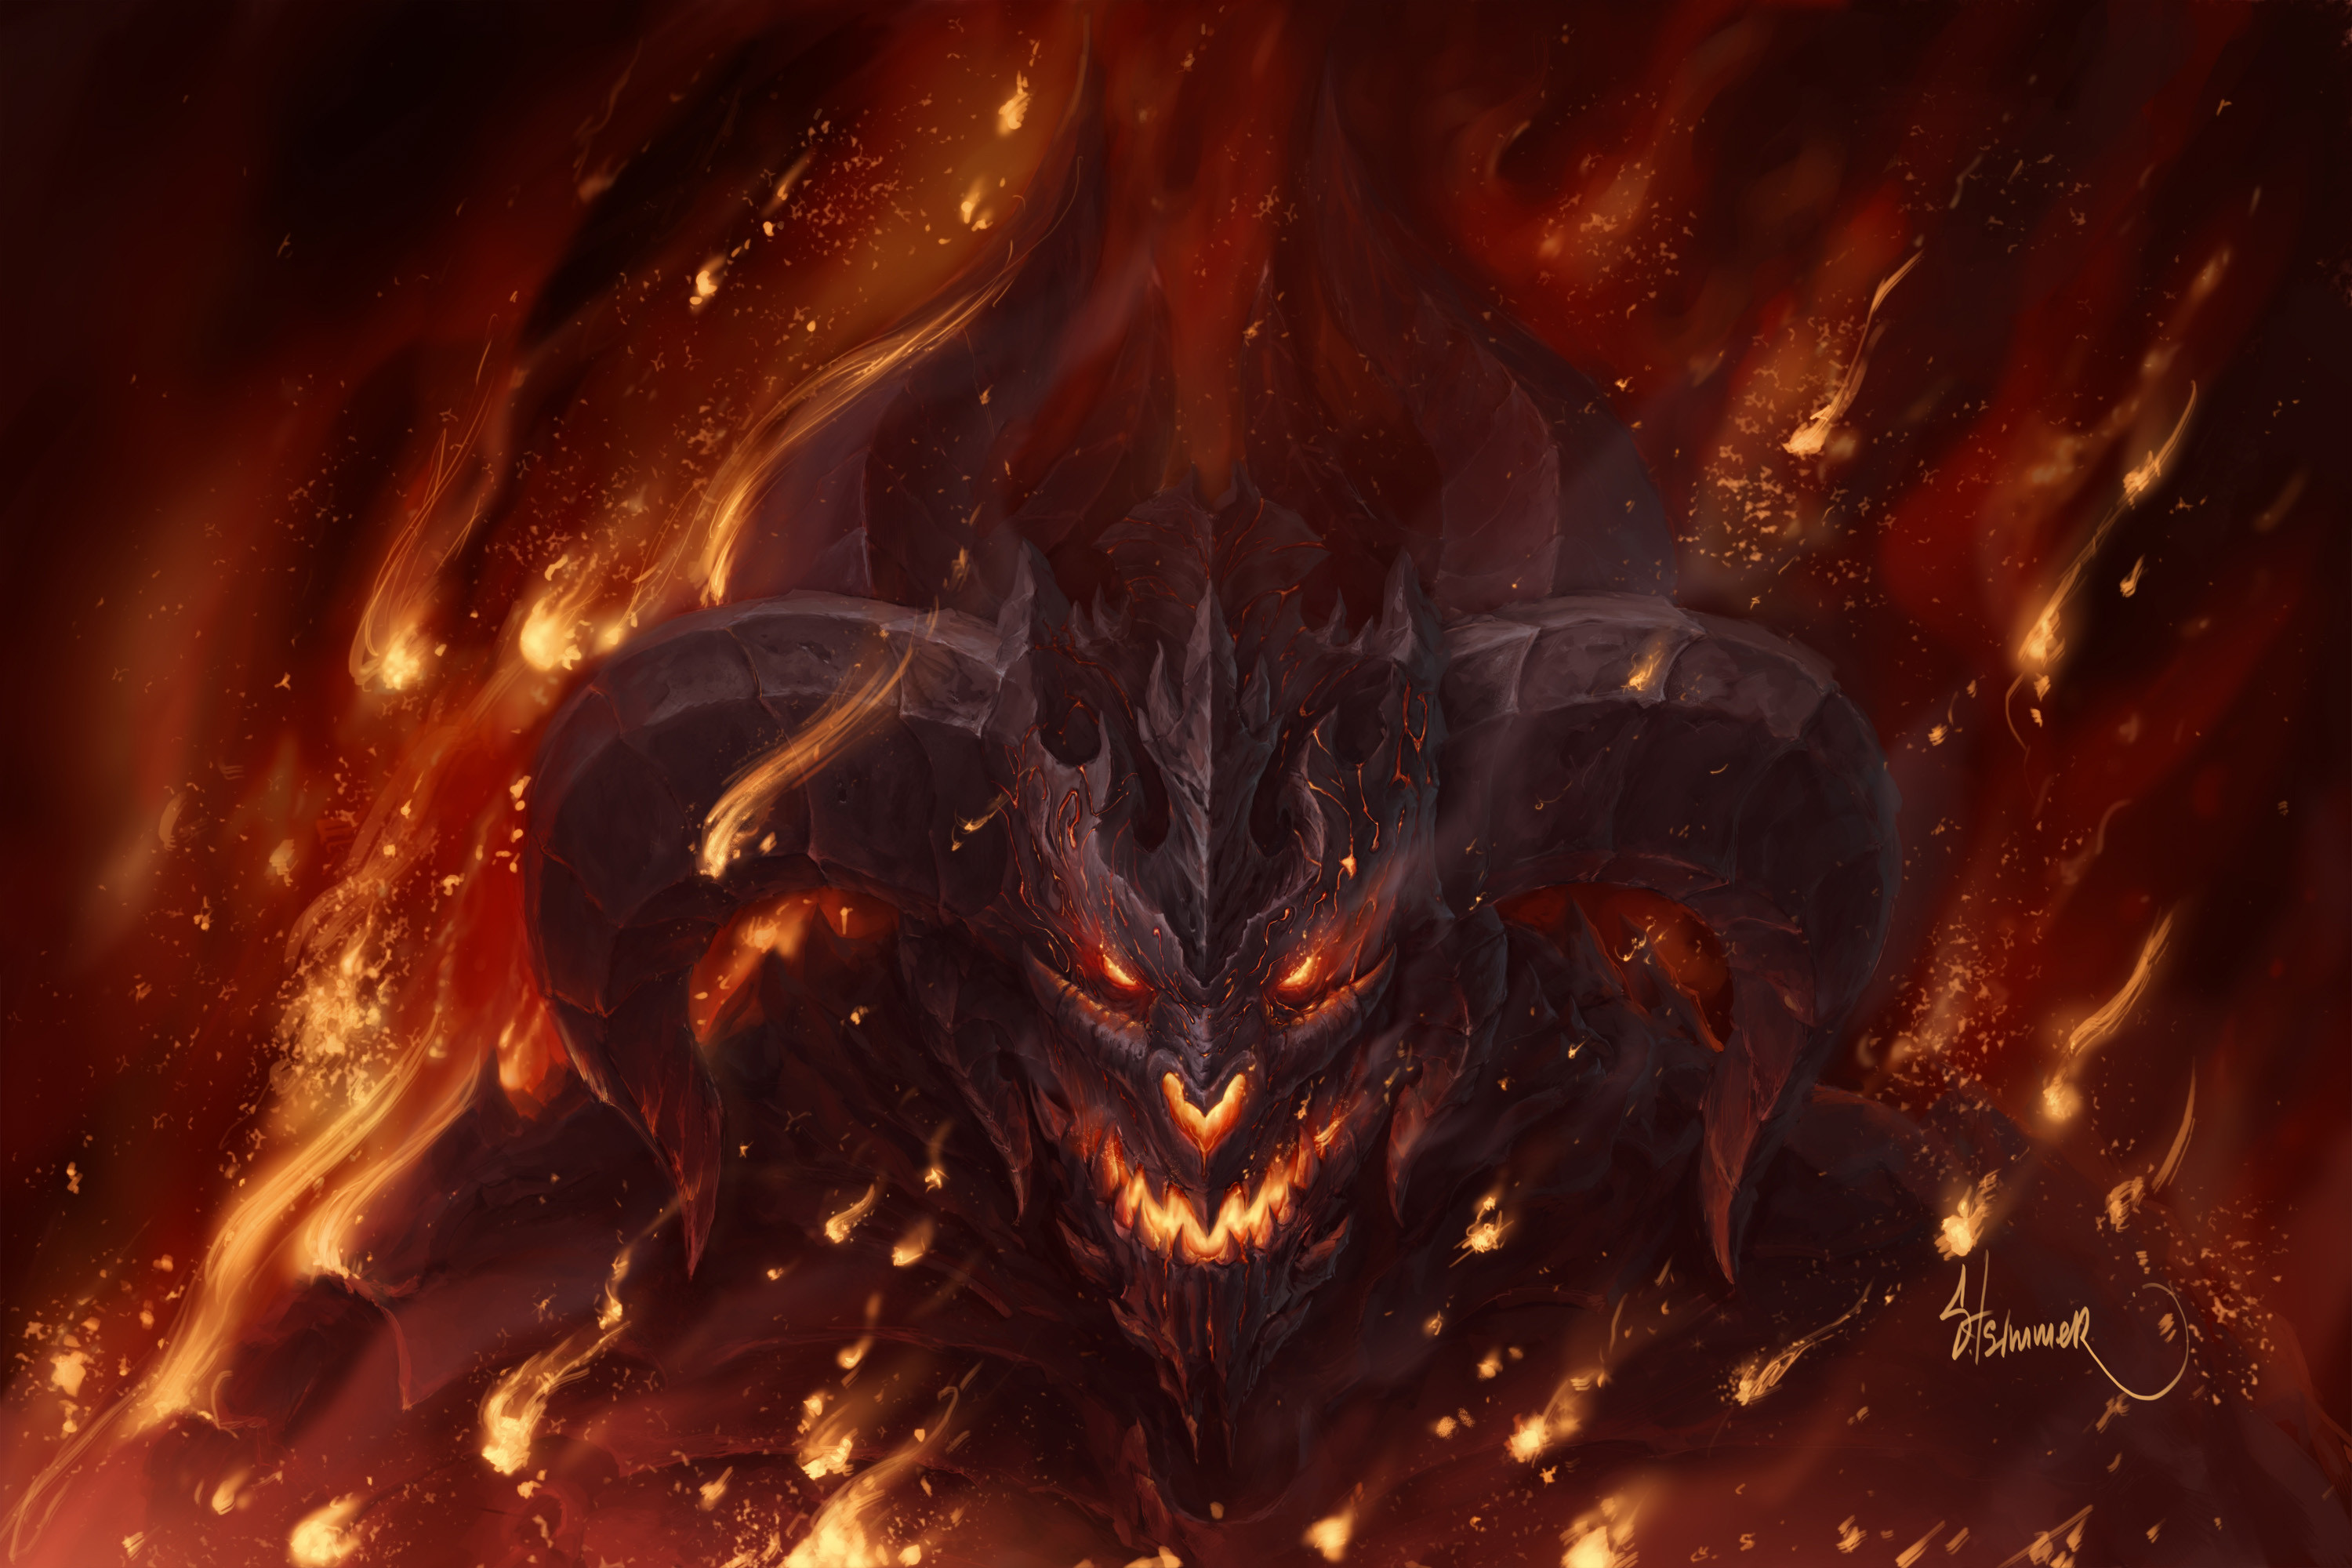 3000x2000 Fire Demon Wallpaper For Desktop Wallpaper 3000 x 2000 px MB shadow  demoness hell fire angels wolf iphone dragon